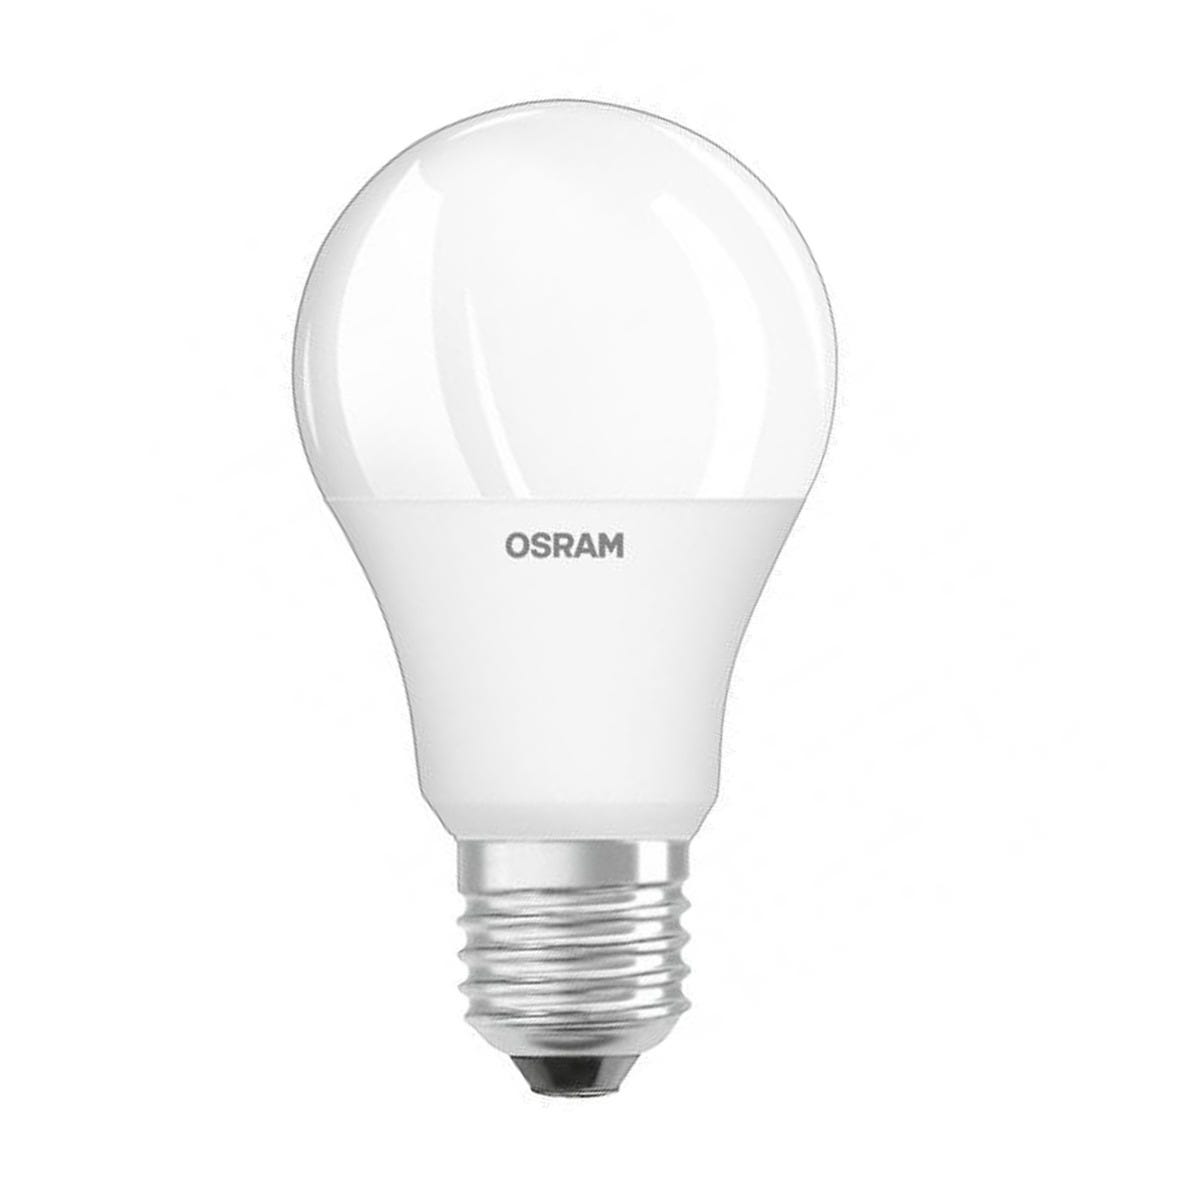 Ampoule électrique Osram Ampoule - - halogene osram, 300W / 240V